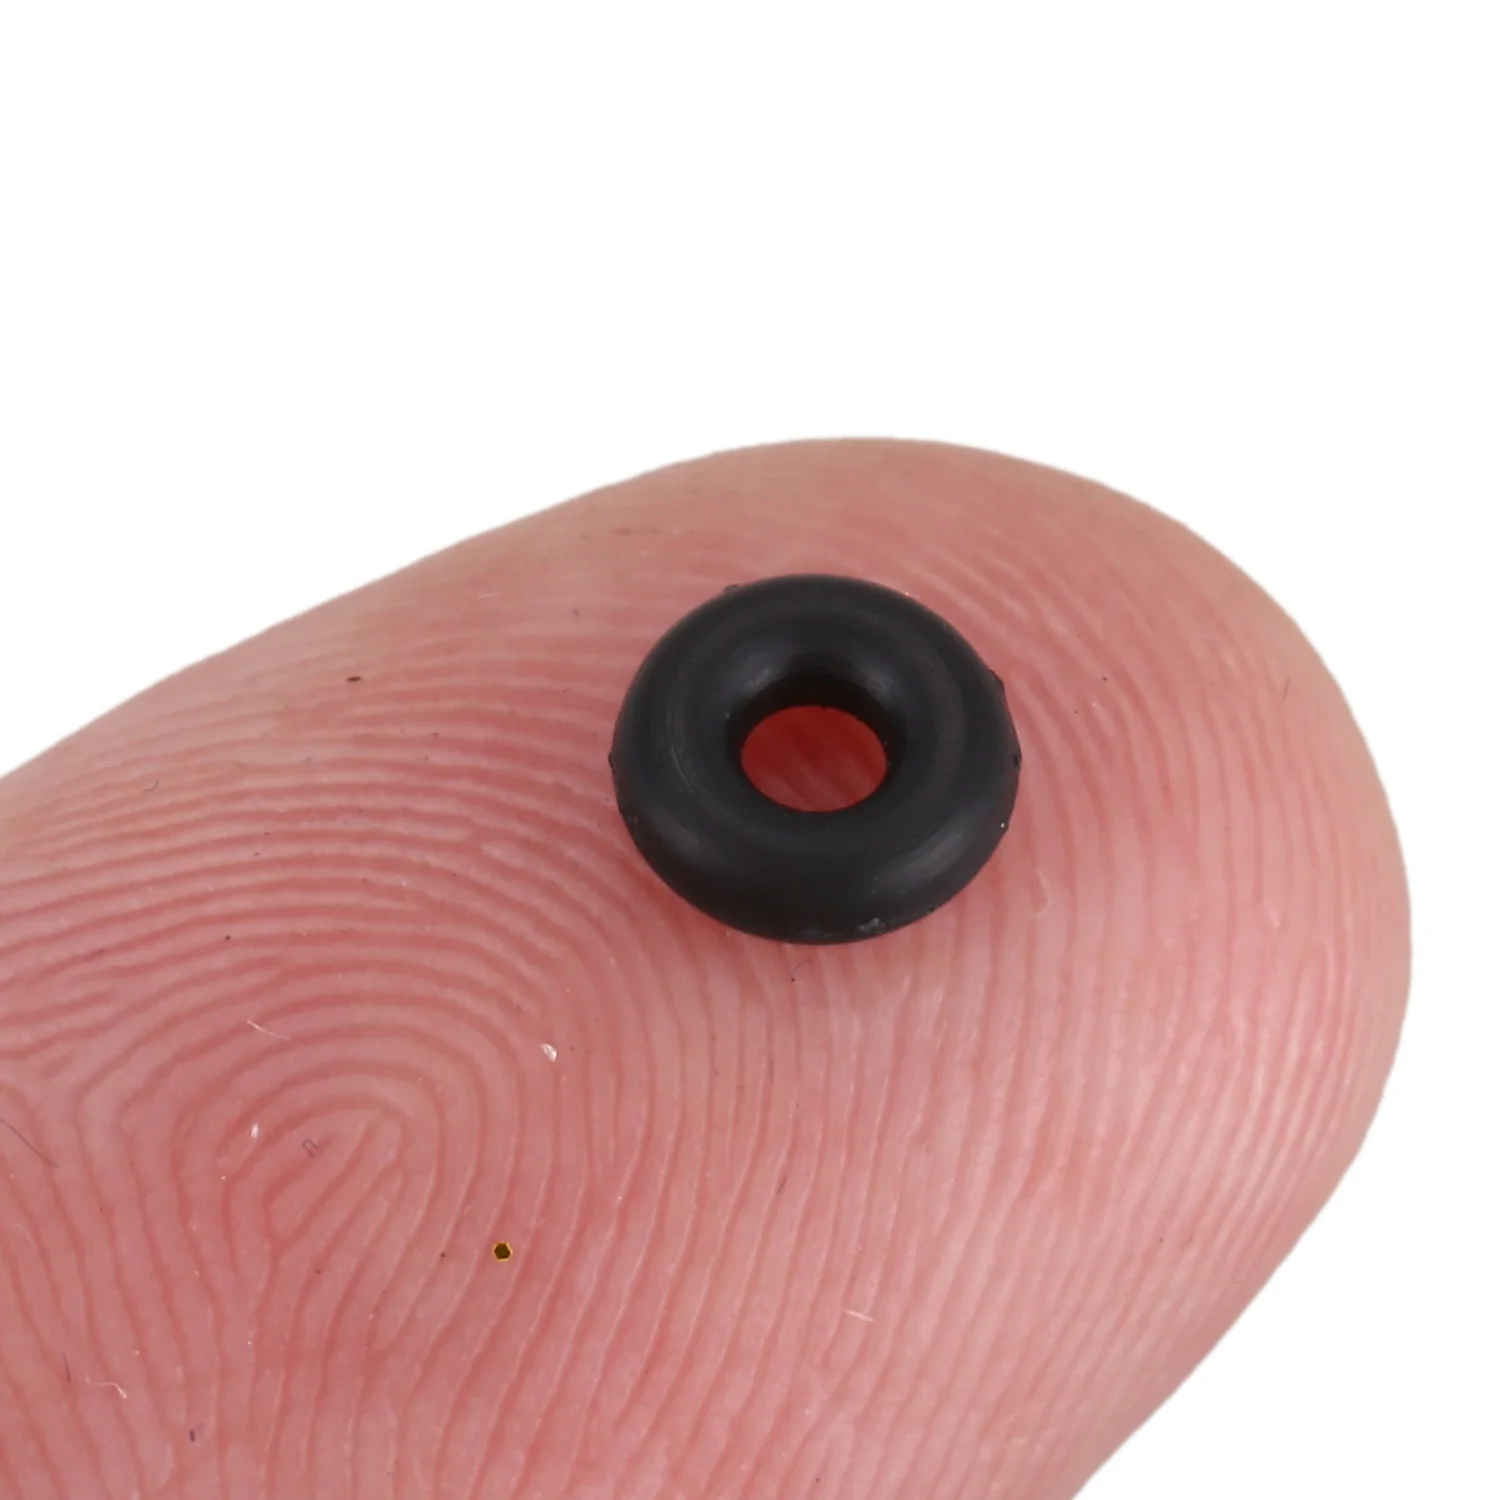 20 штук черных резиновых уплотнительных колец диаметром 1,8 мм толщиной масляные шайбы